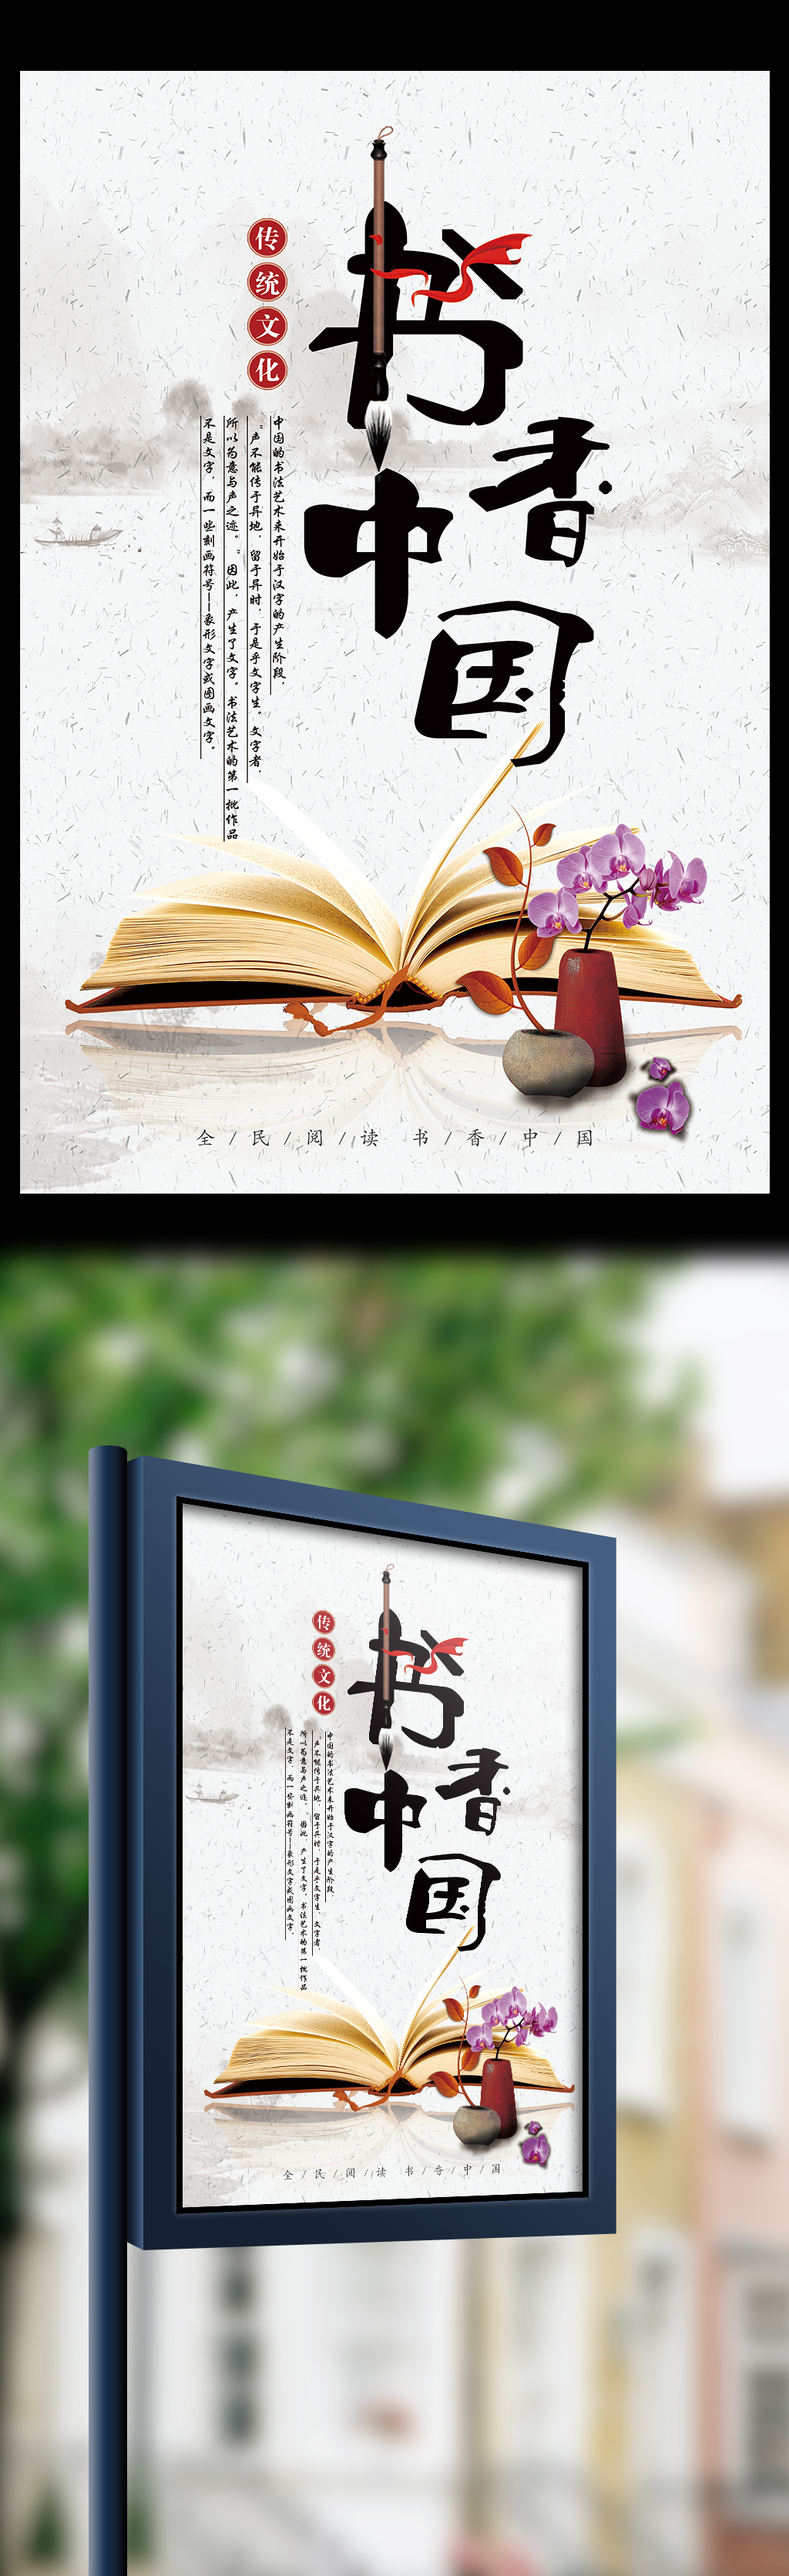 中国水墨风画书香阅读海报设计图片